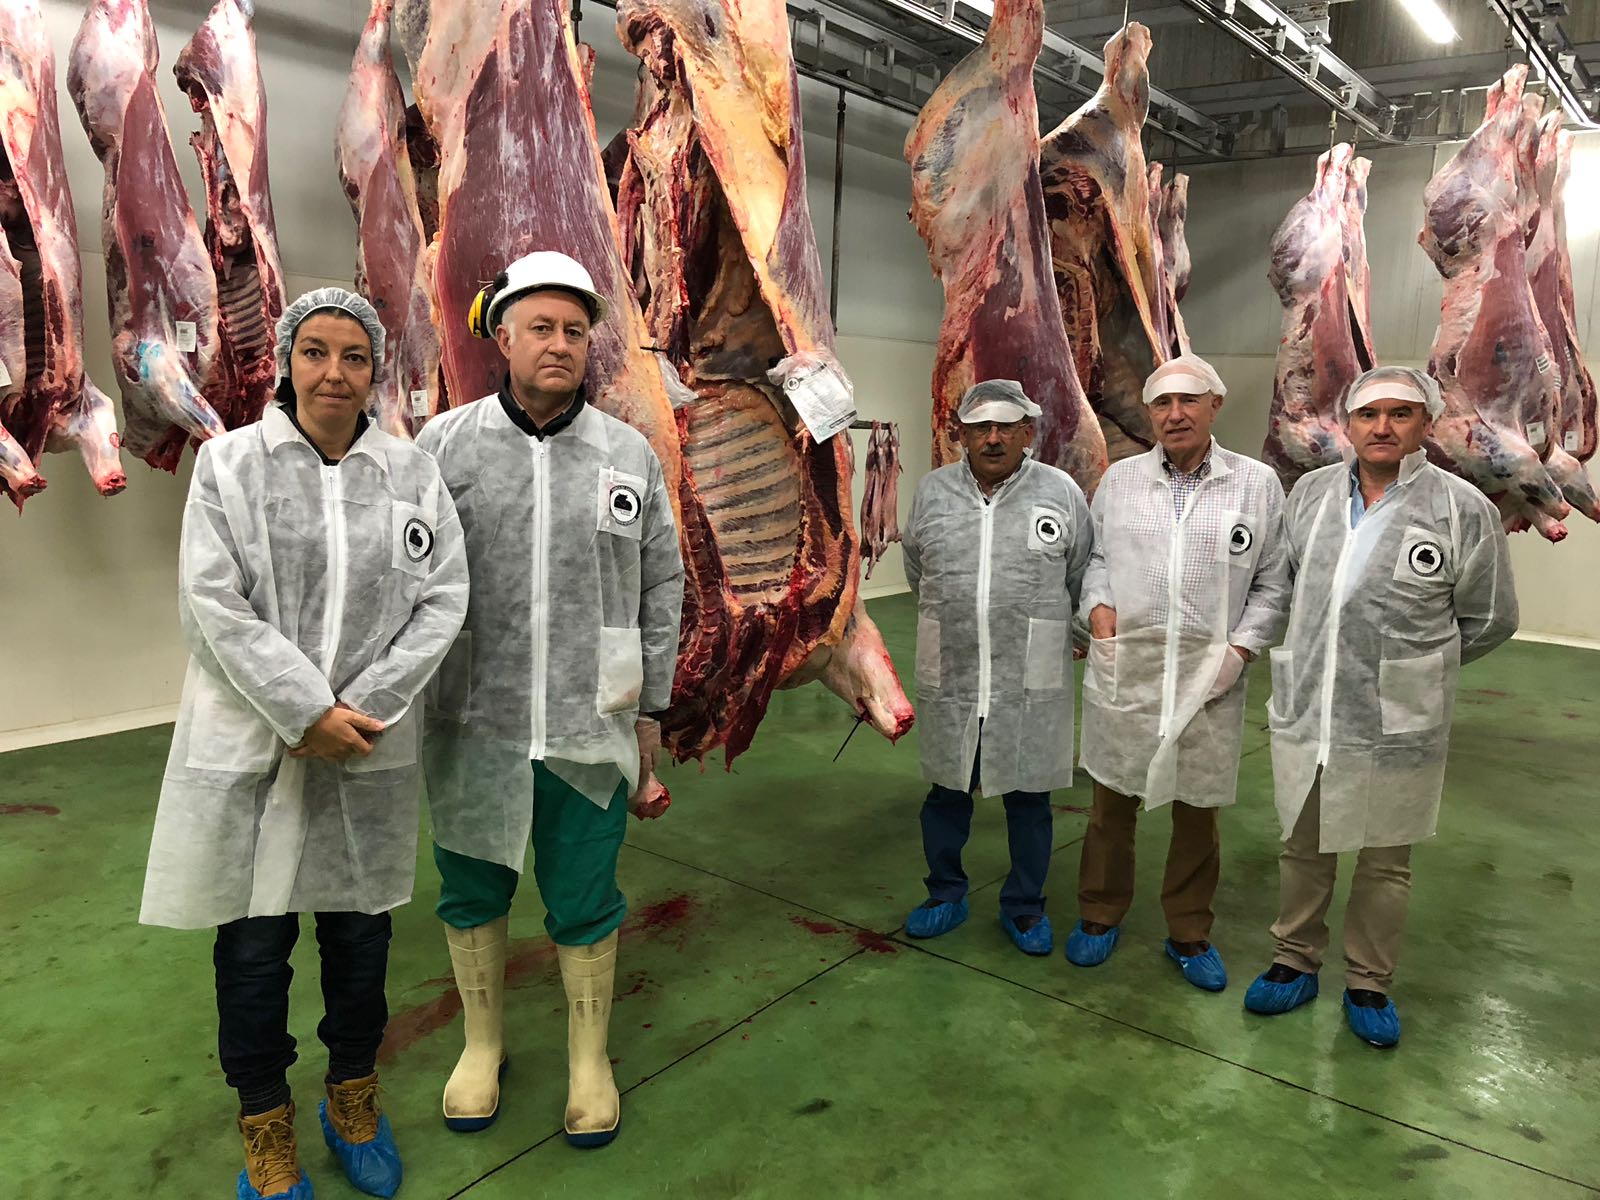 La Marca de Garantía Vacuno Mayor Asturiano cuenta ya con 400 explotaciones ganaderas y ha certificado más de 80.000 kilos de carne.